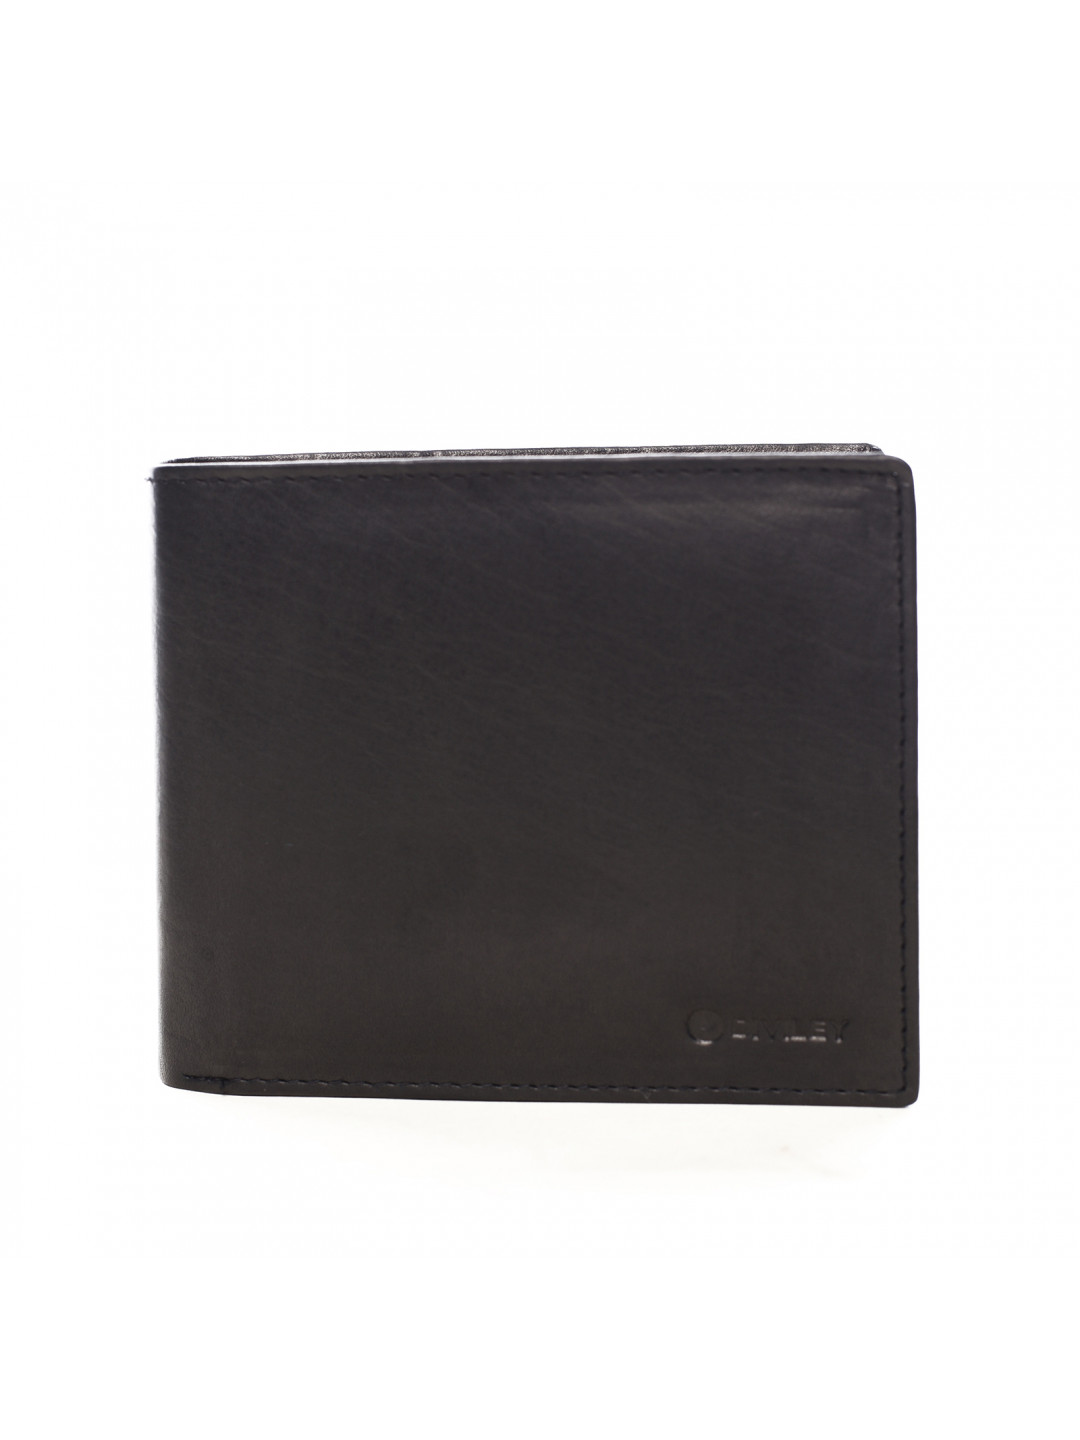 Praktická pánská lkožená peněženka Anton černá